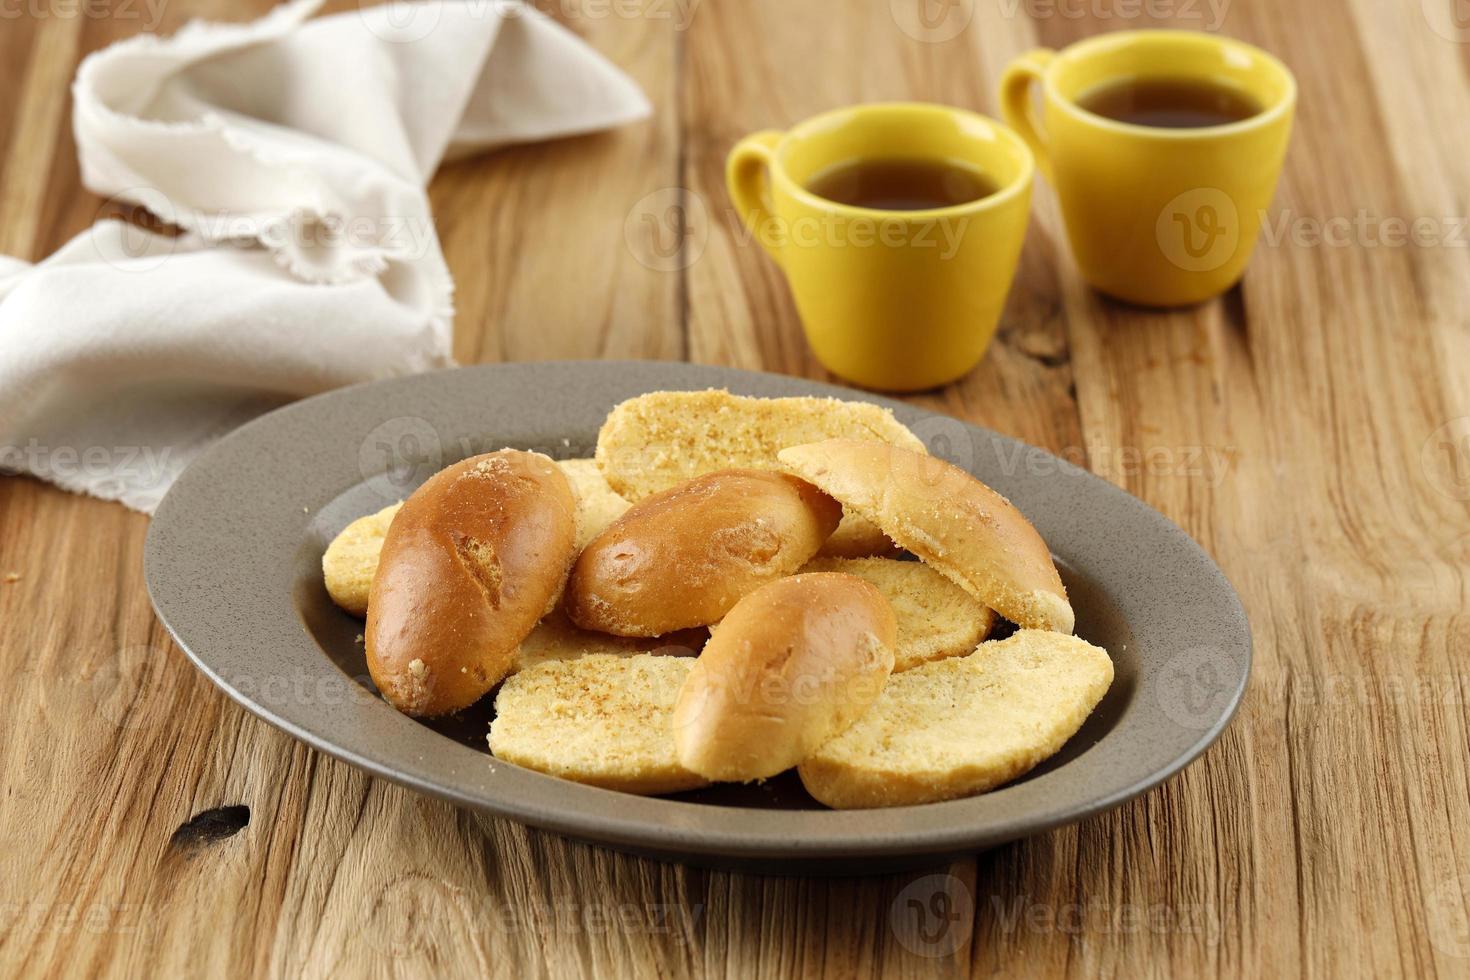 pastel de pan bagelen, pan crujiente con mantequilla untada y azúcar blanca espolvoreada. foto